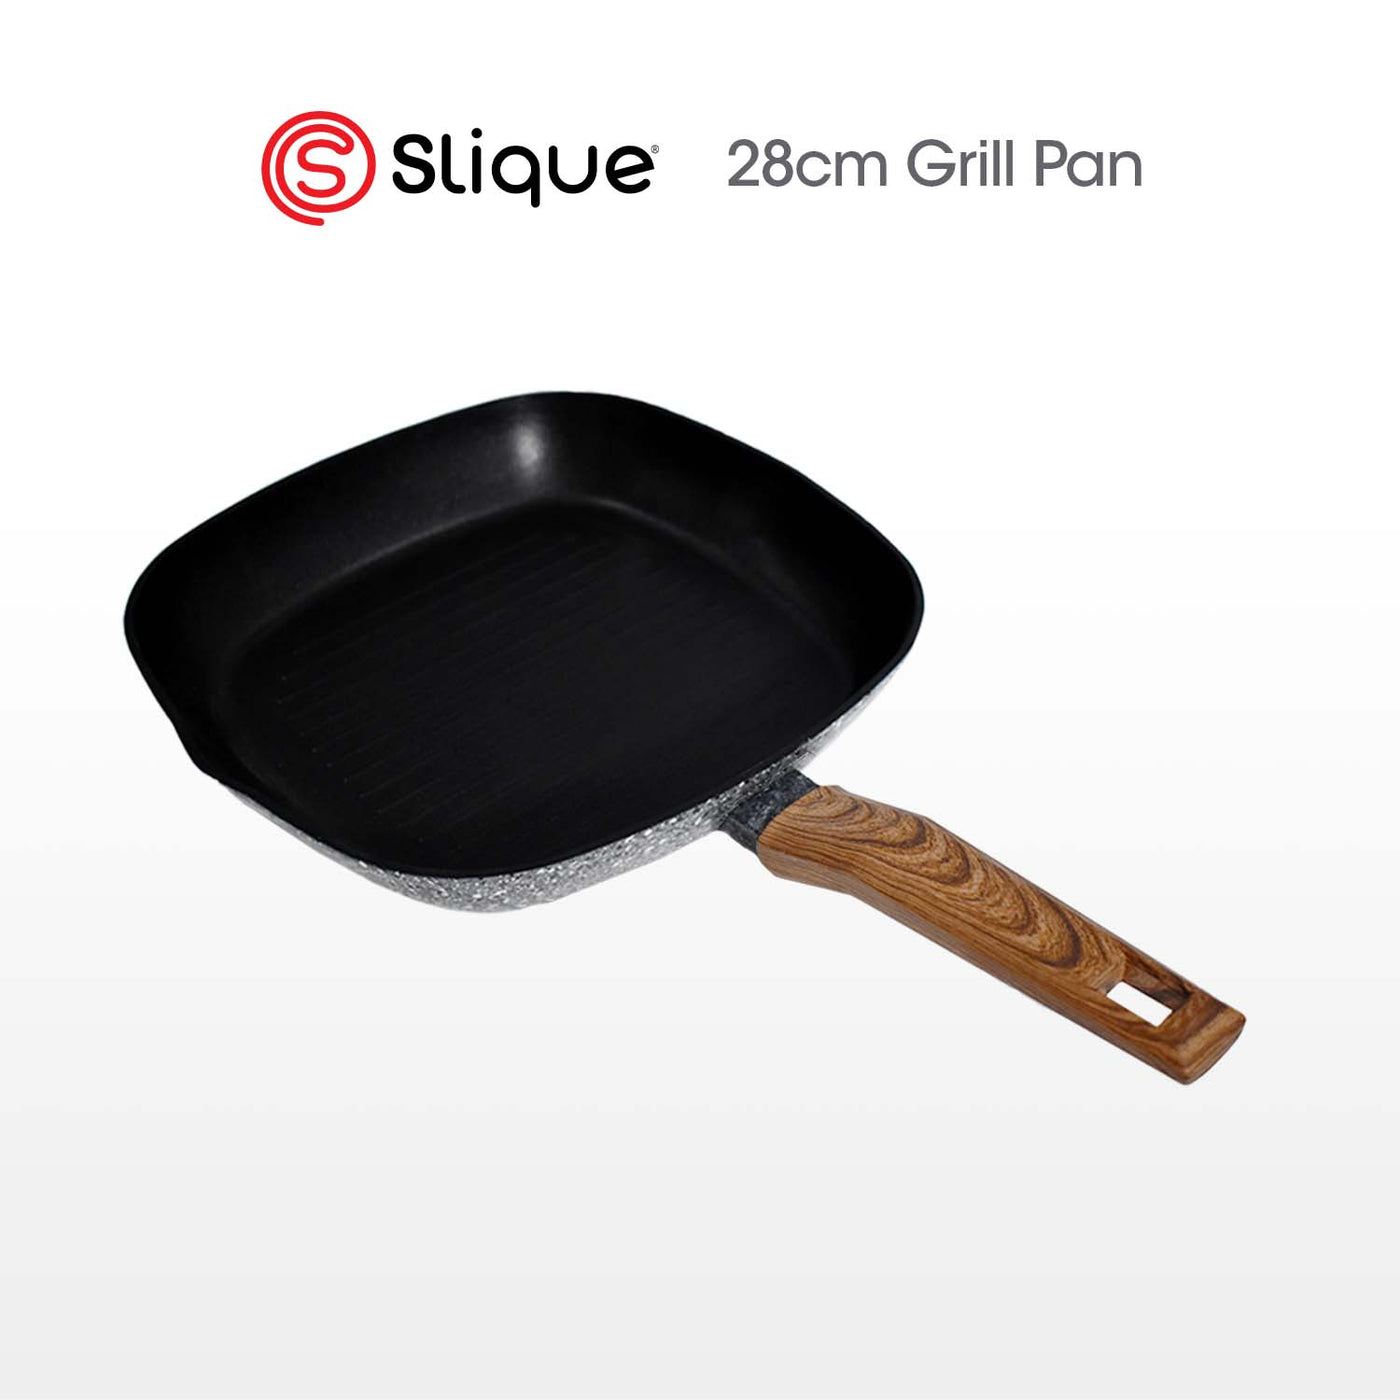 SLIQUE Premium Granite Grill Pan 24cm/28cm Non-Stick